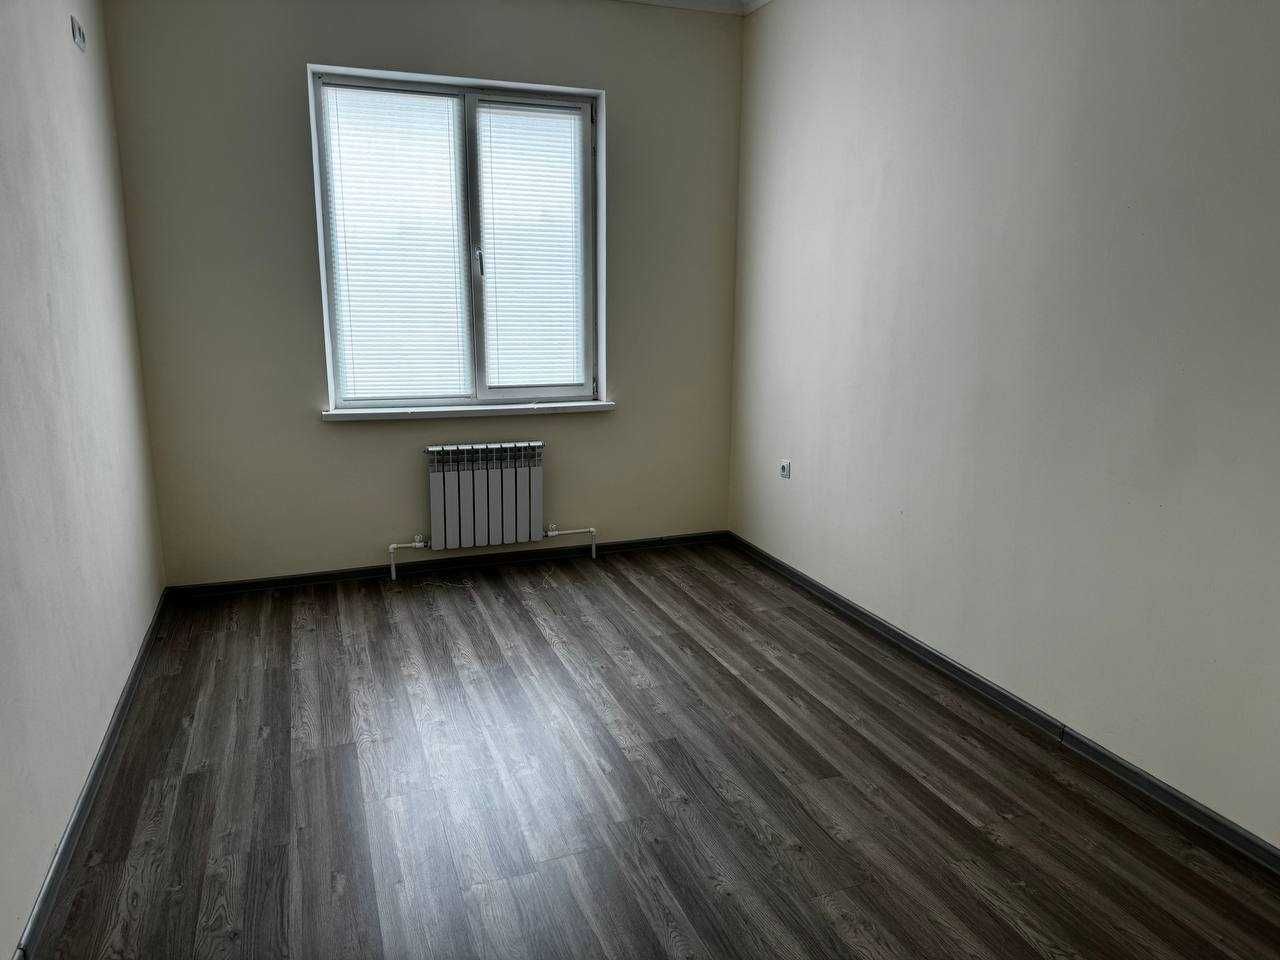 Продается 3-х комнатная квартира (новостройка) Алмалык. Нижняя Терраса